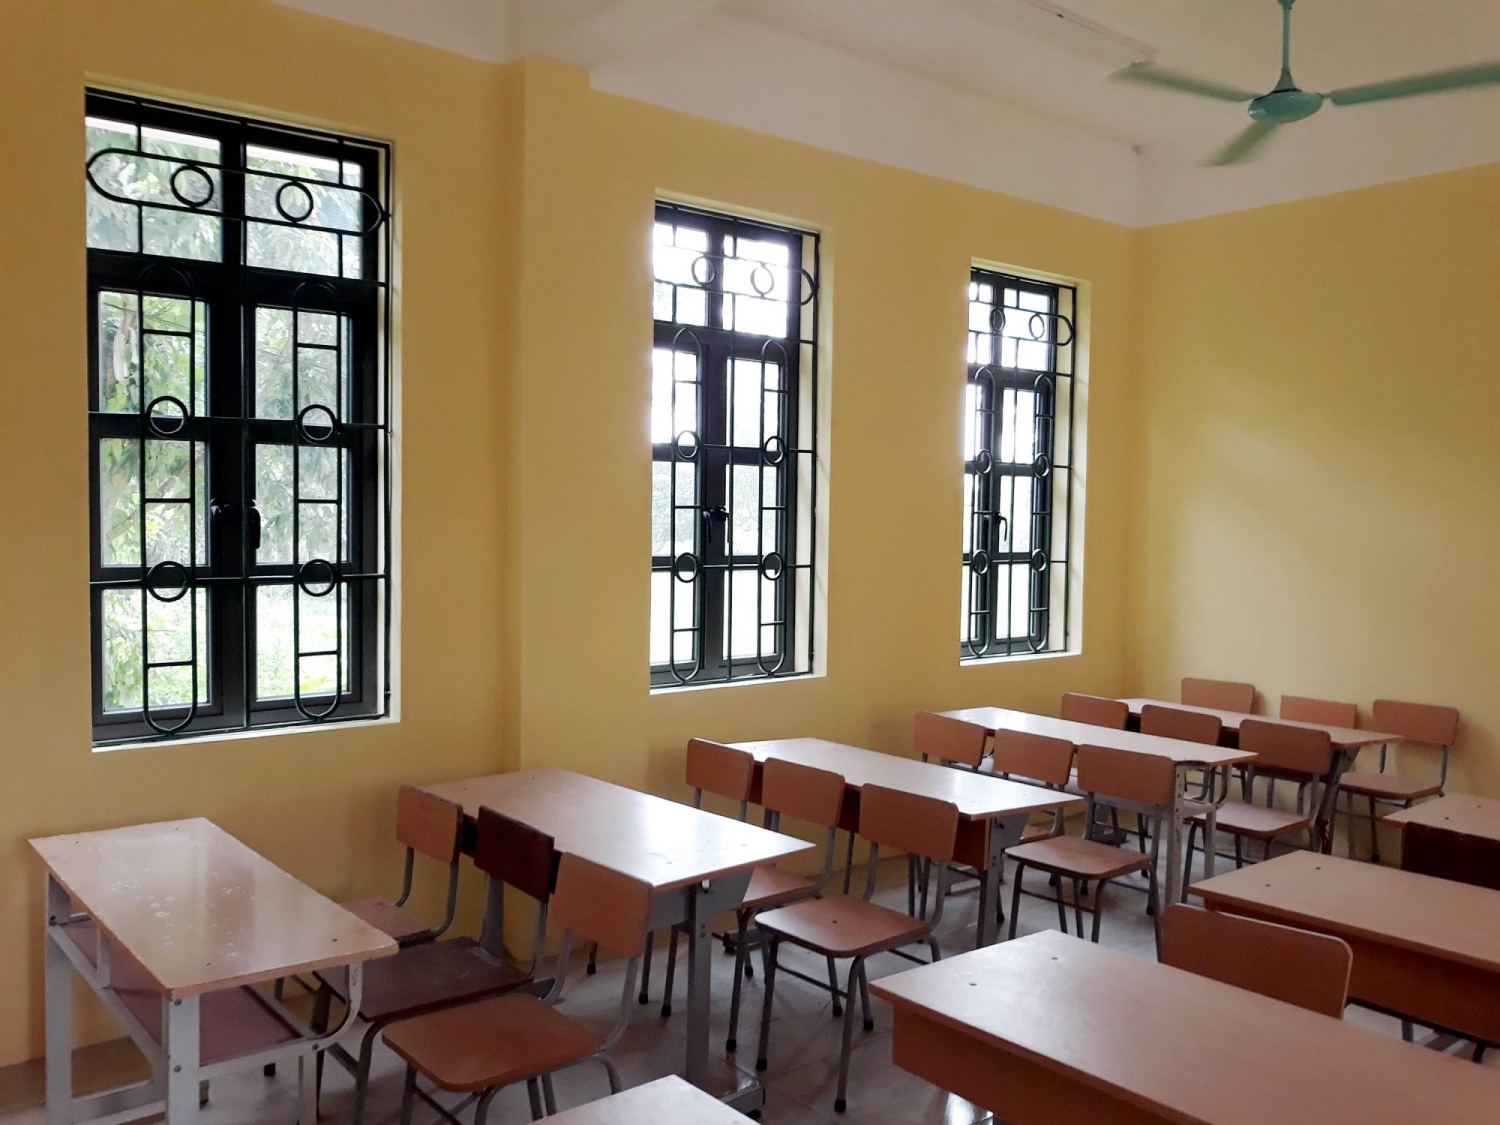 Các phòng học được trang bị đầy đủ phương tiện học tập và giảng dạy